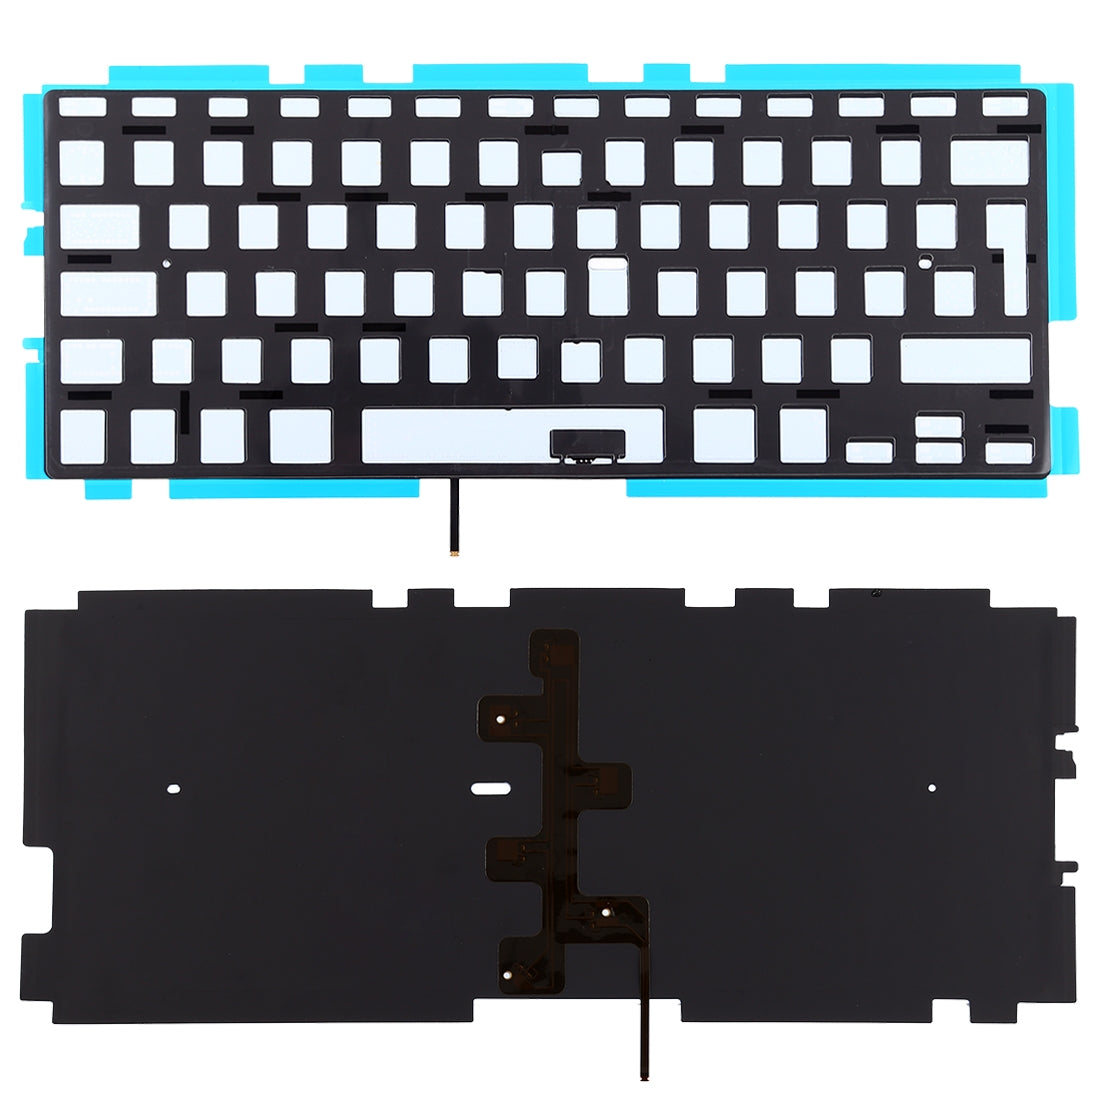 Backlight Keyboard UK Version without ñ MacBook Pro 13 A1278 2009 2012